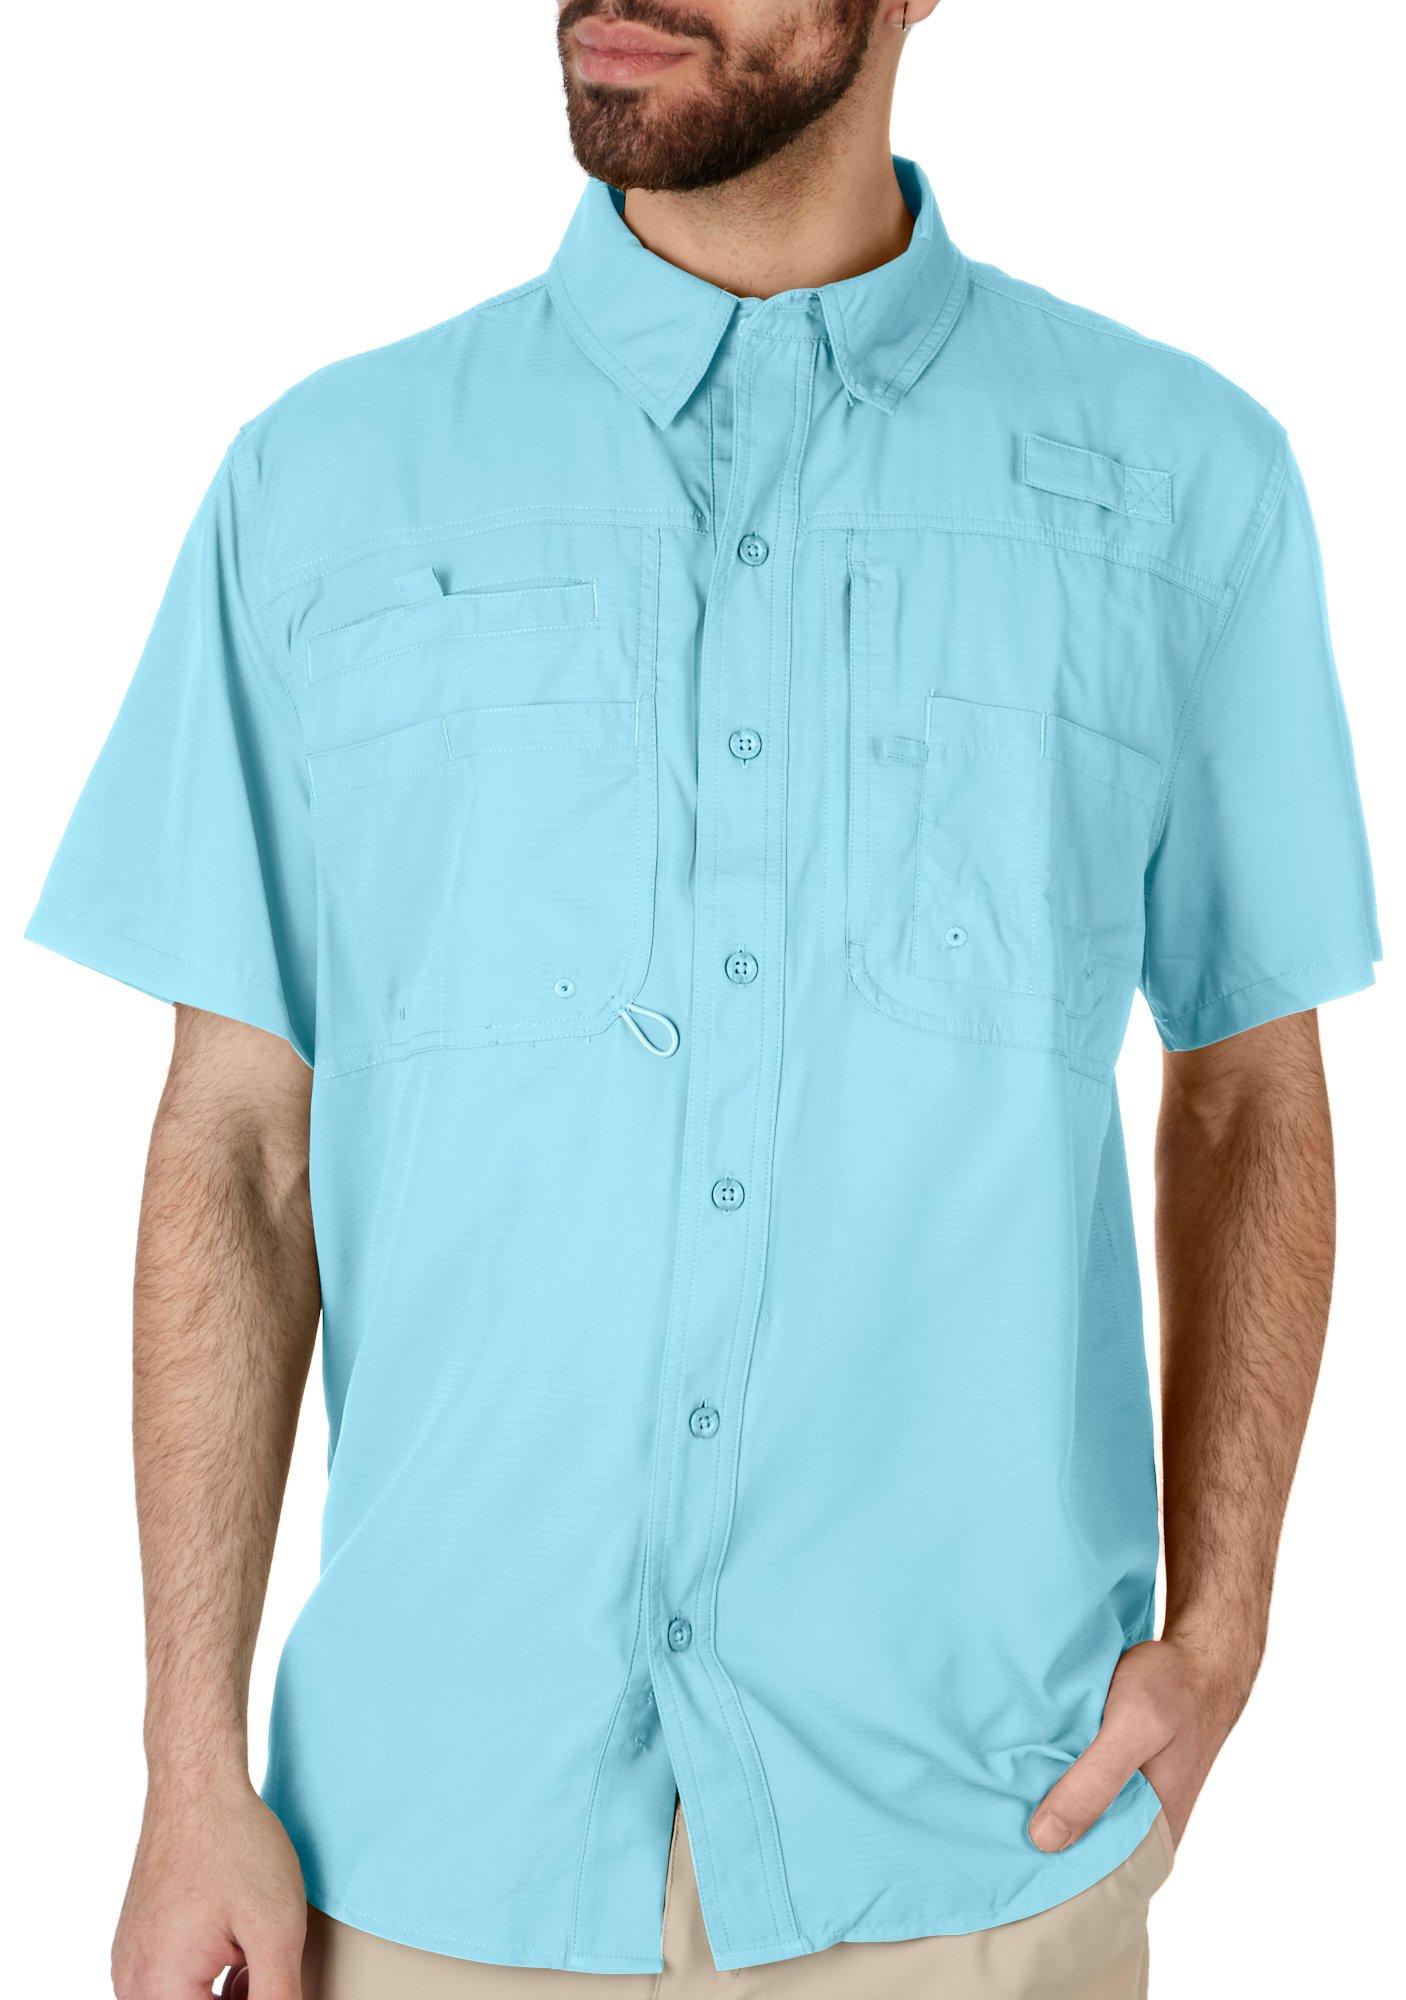 Reel Legends Mens Solid Saltwater II Short Sleeve Shirt - Aqua Blue - Medium